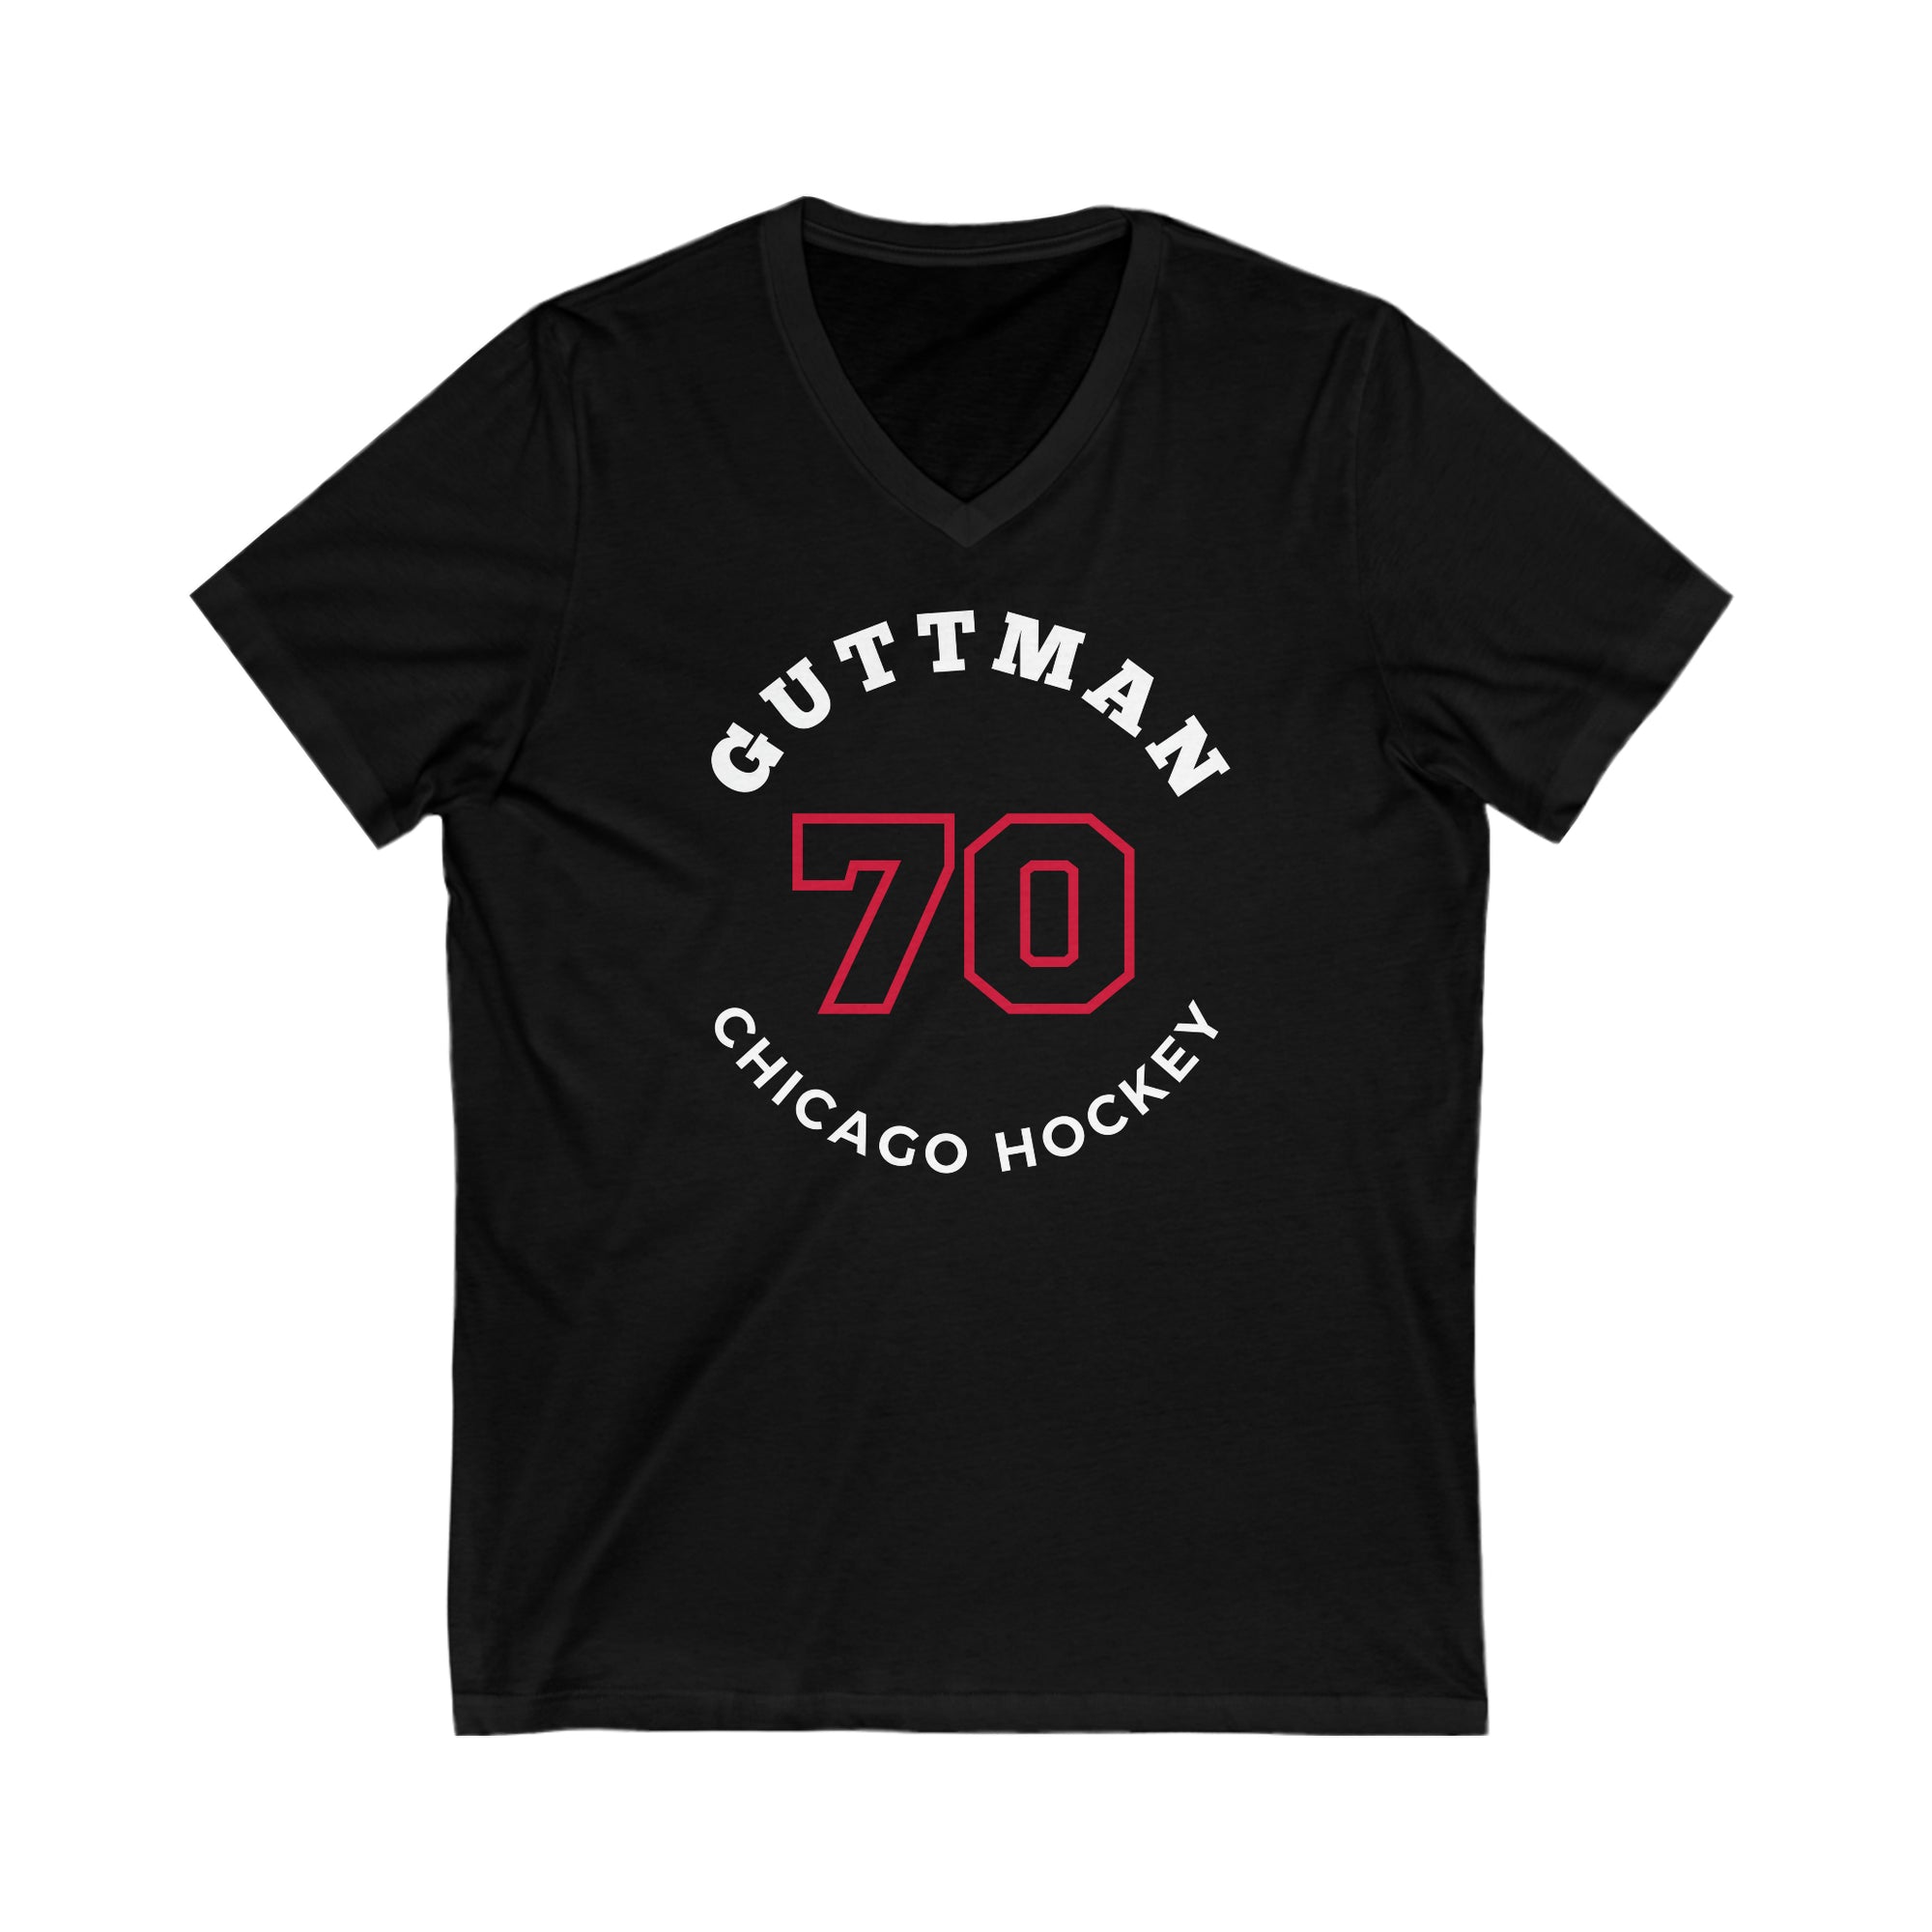 Guttman 70 Chicago Hockey Number Arch Design Unisex V-Neck Tee